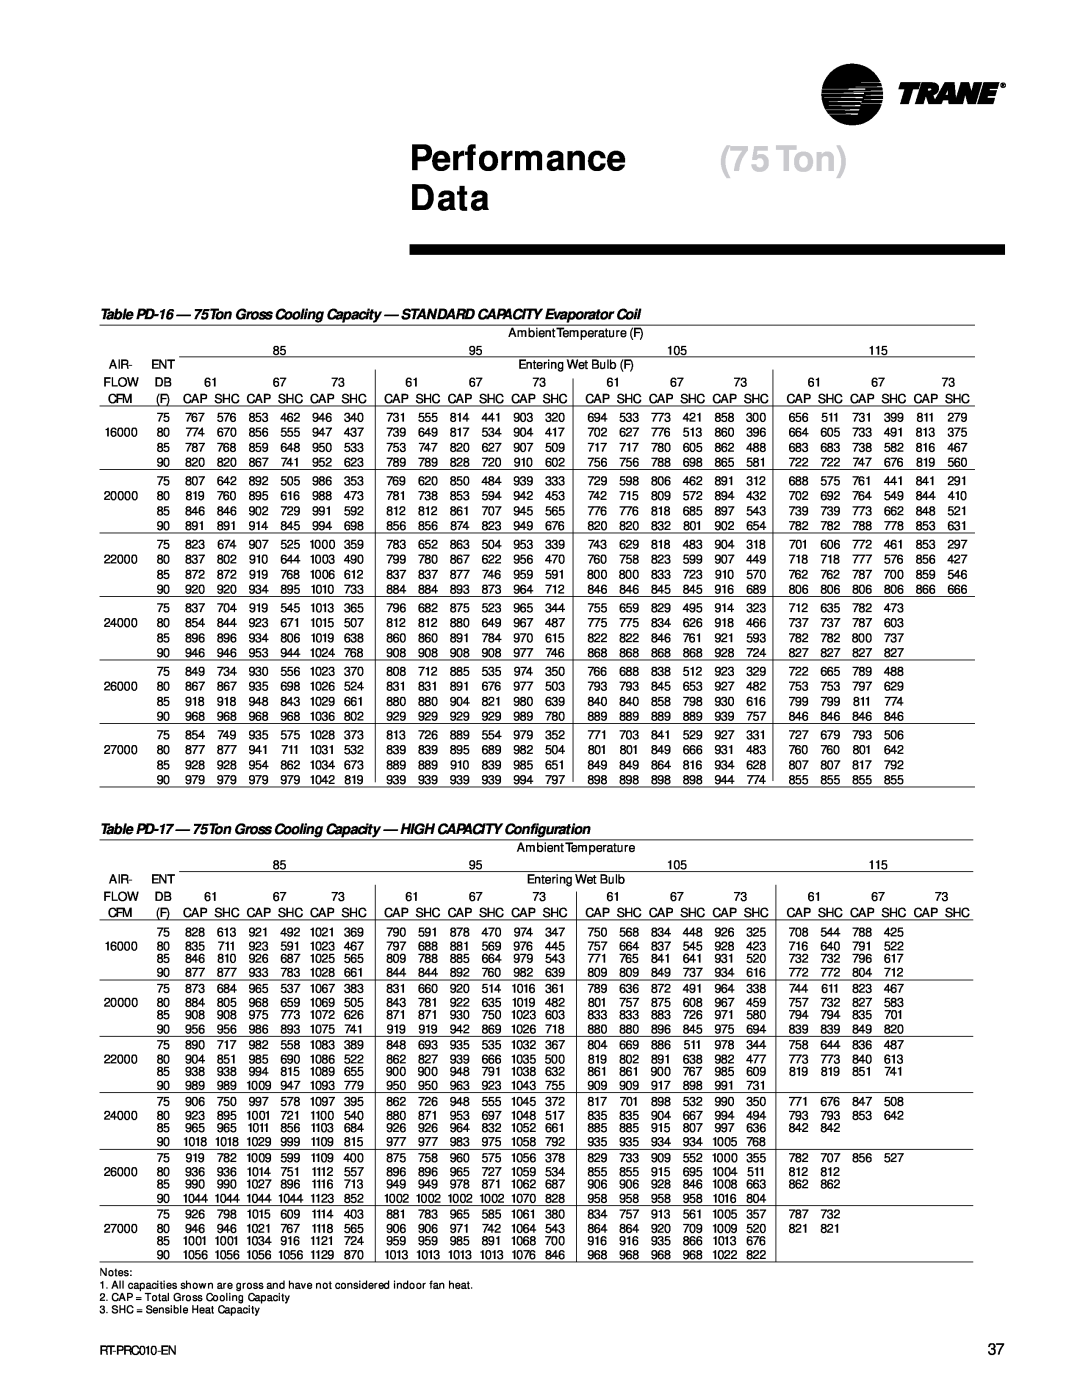 Trane RT-PRC010-EN manual Performance 75Ton Data 